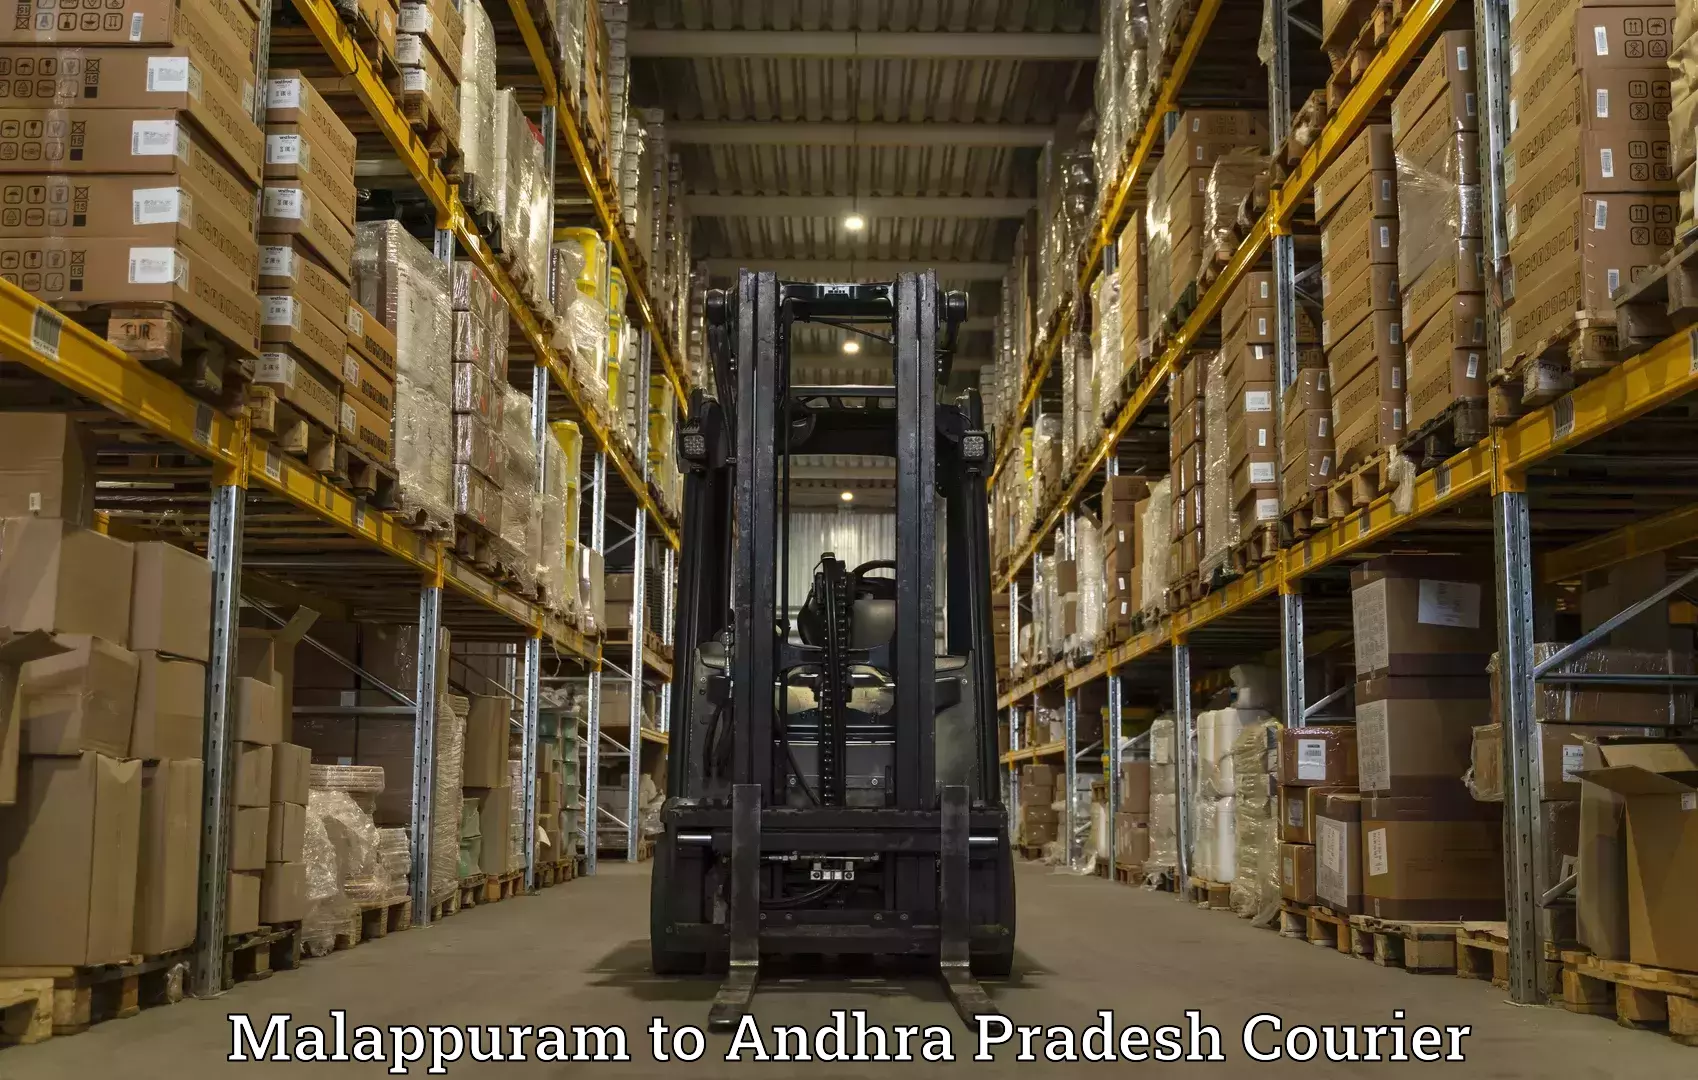 Logistics service provider Malappuram to Bhimavaram